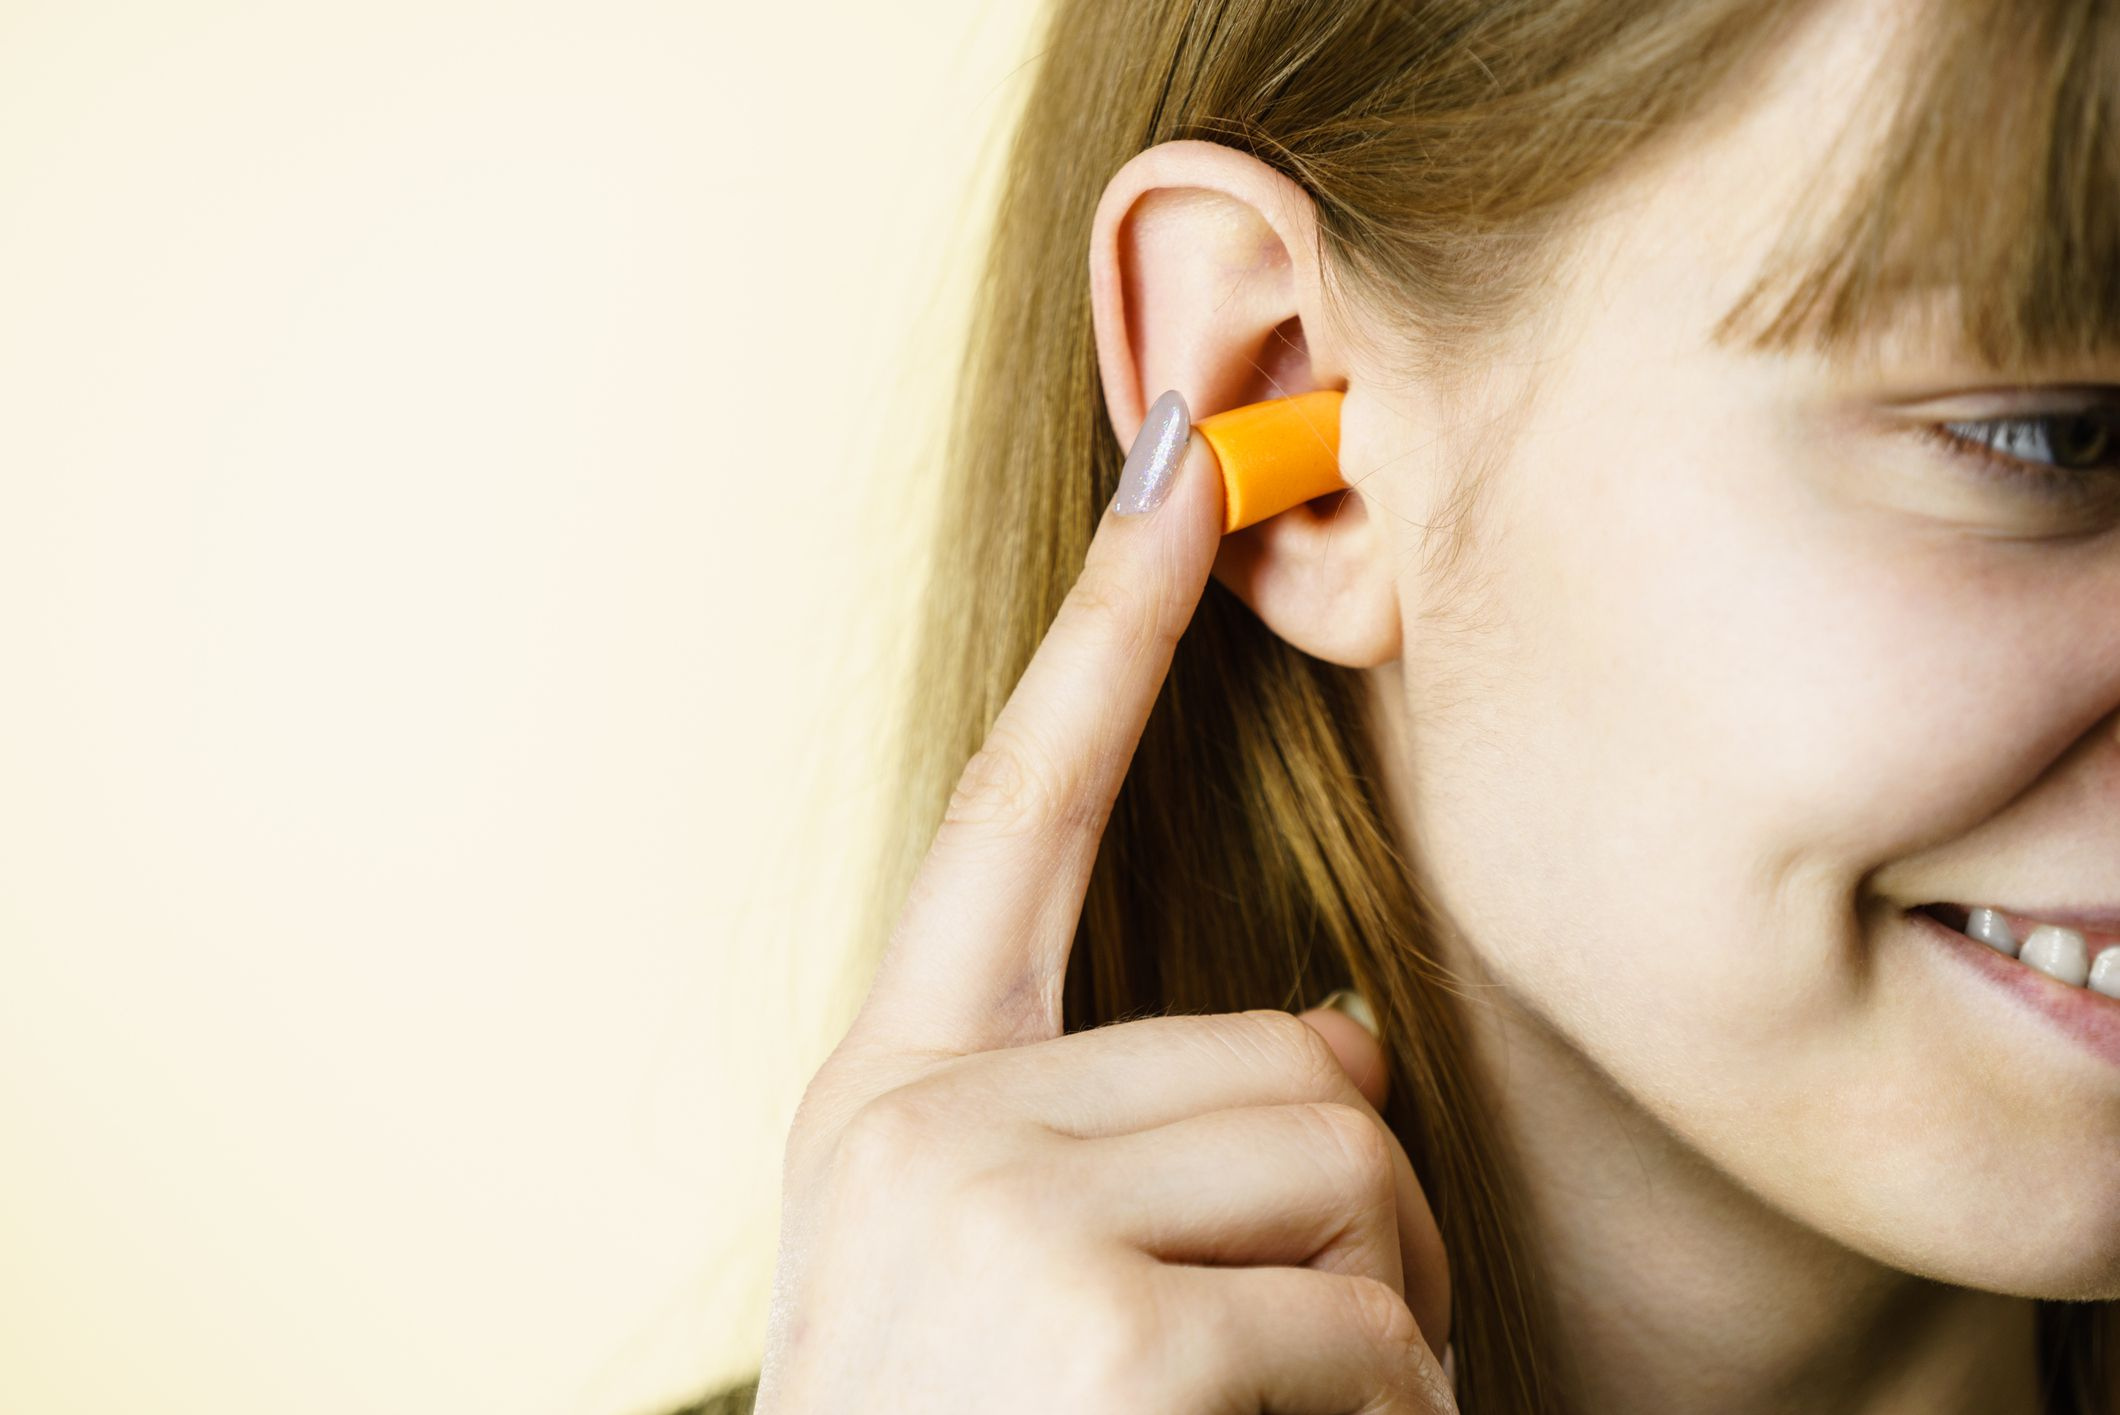 Les professions les plus à risque pour l’audition : Protégeons nos oreilles !